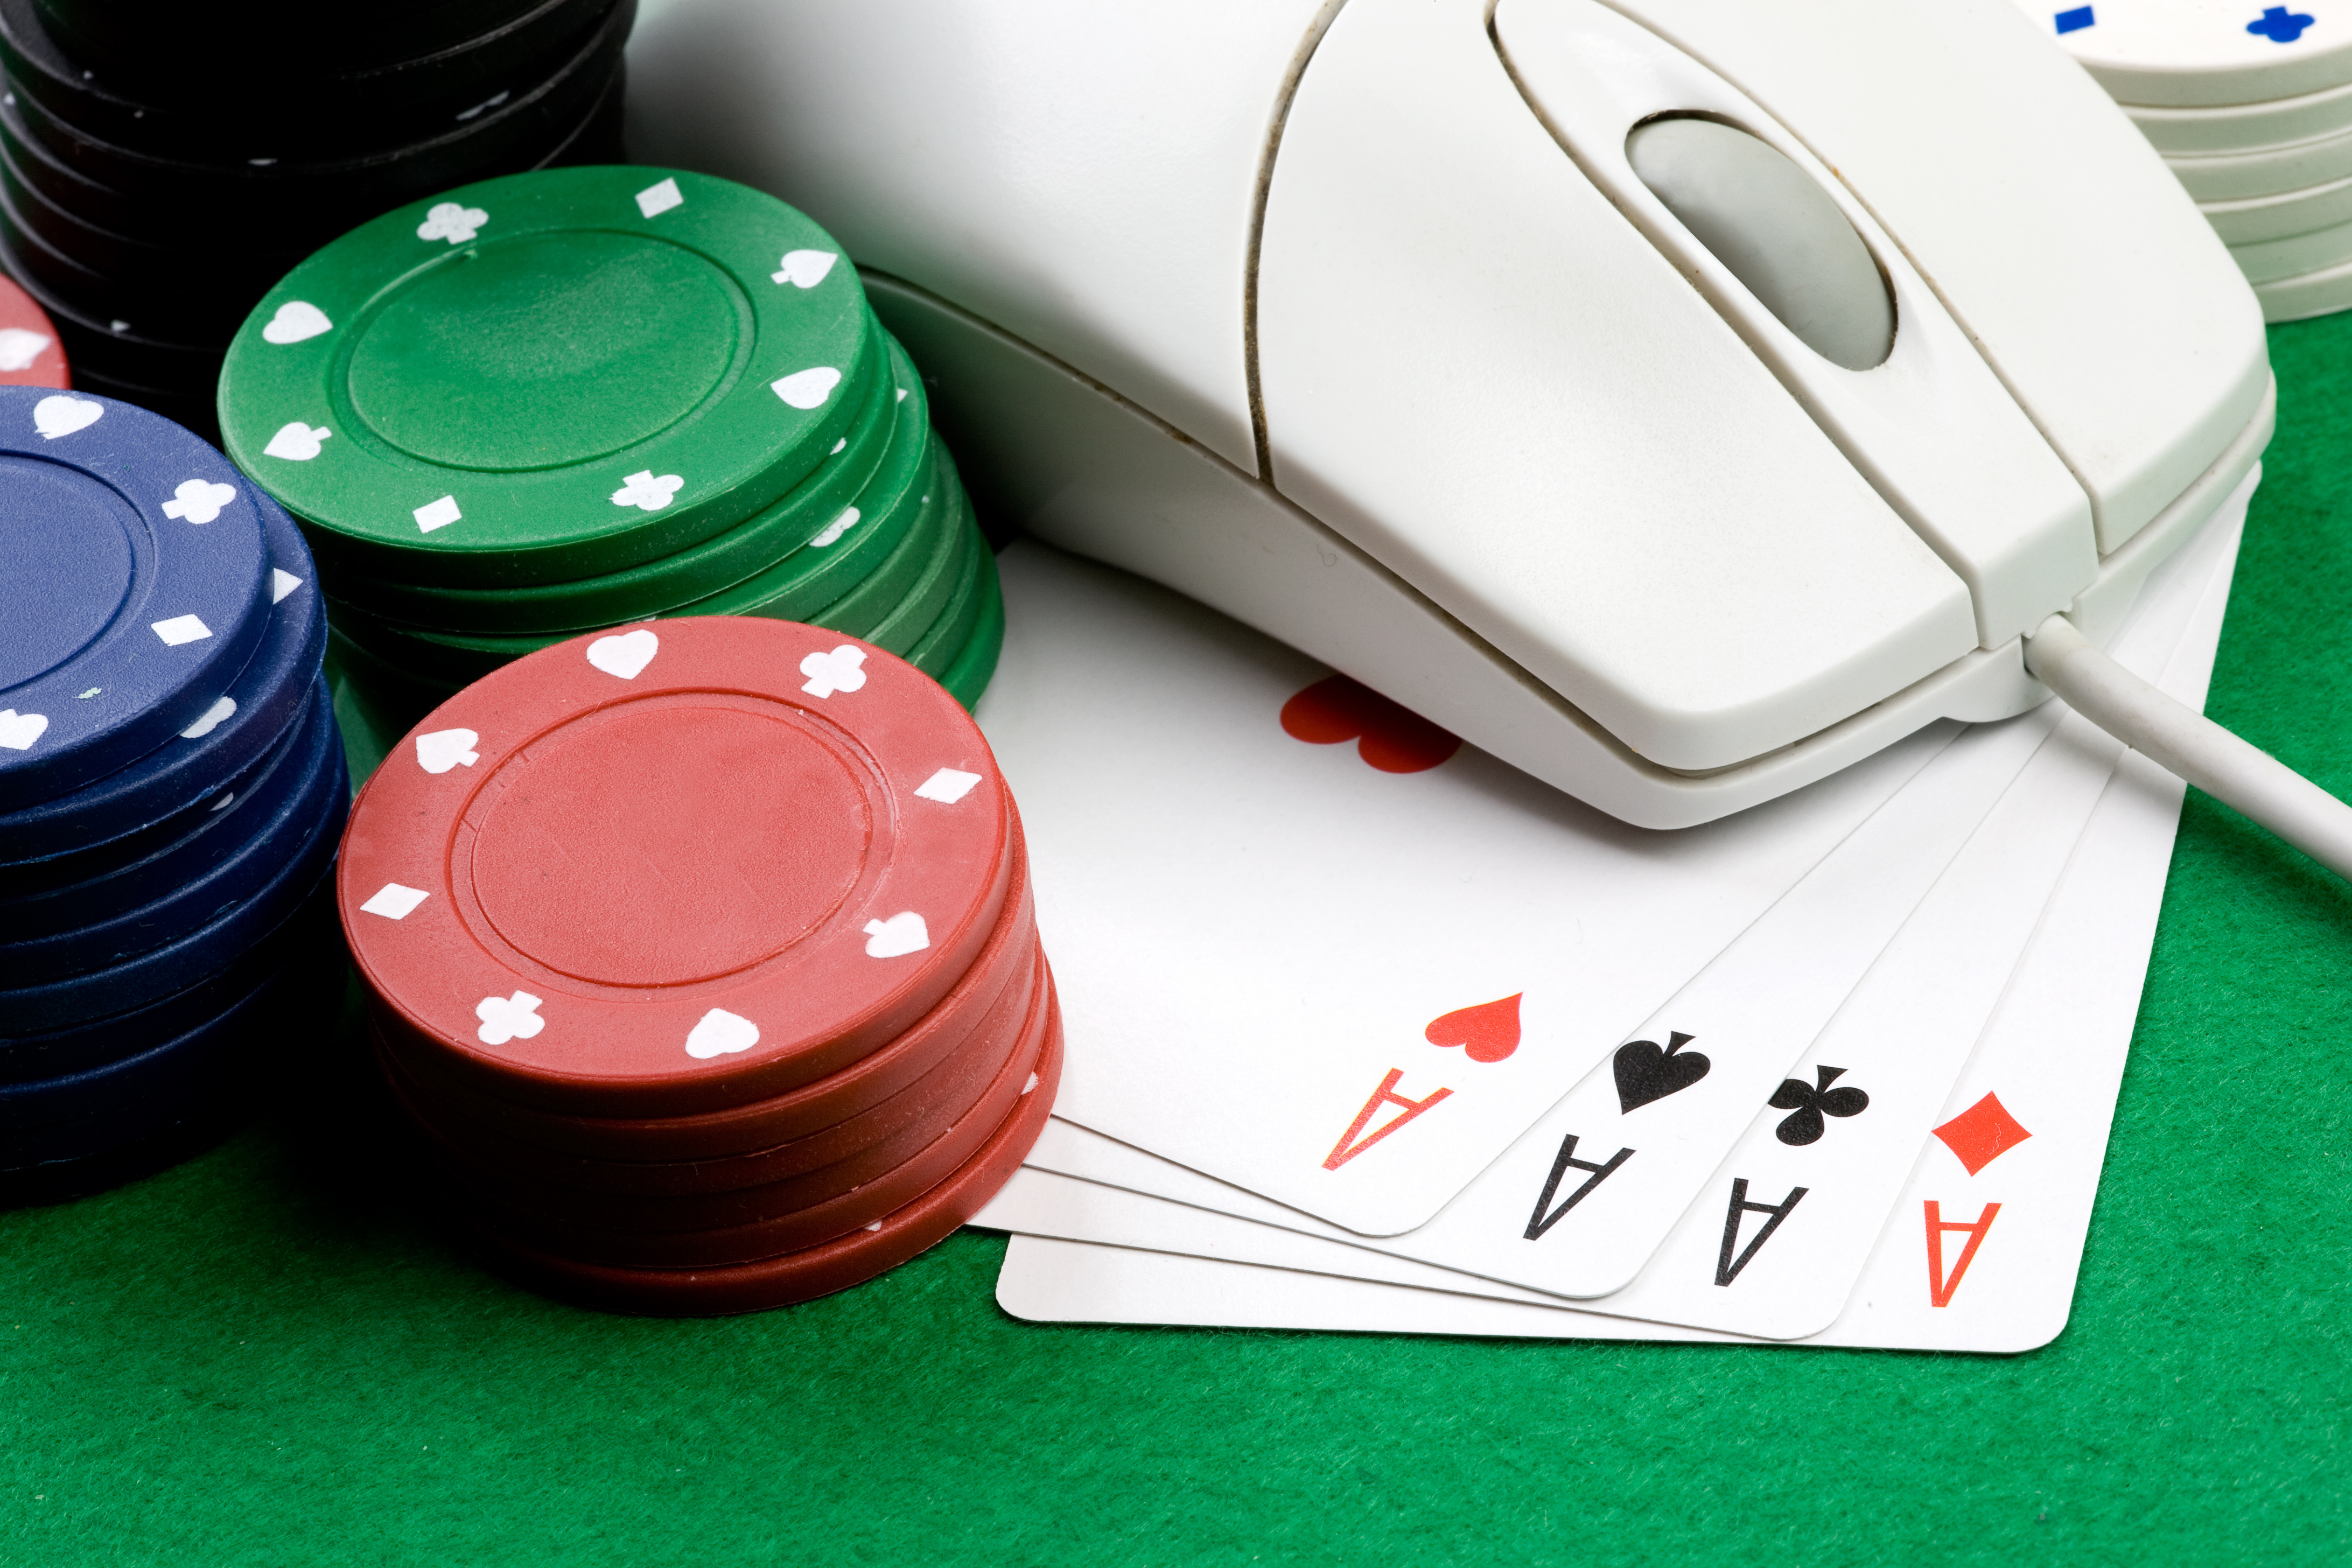 Si vous voulez jouer au poker en ligne, inscrivez-vous sur Bwin